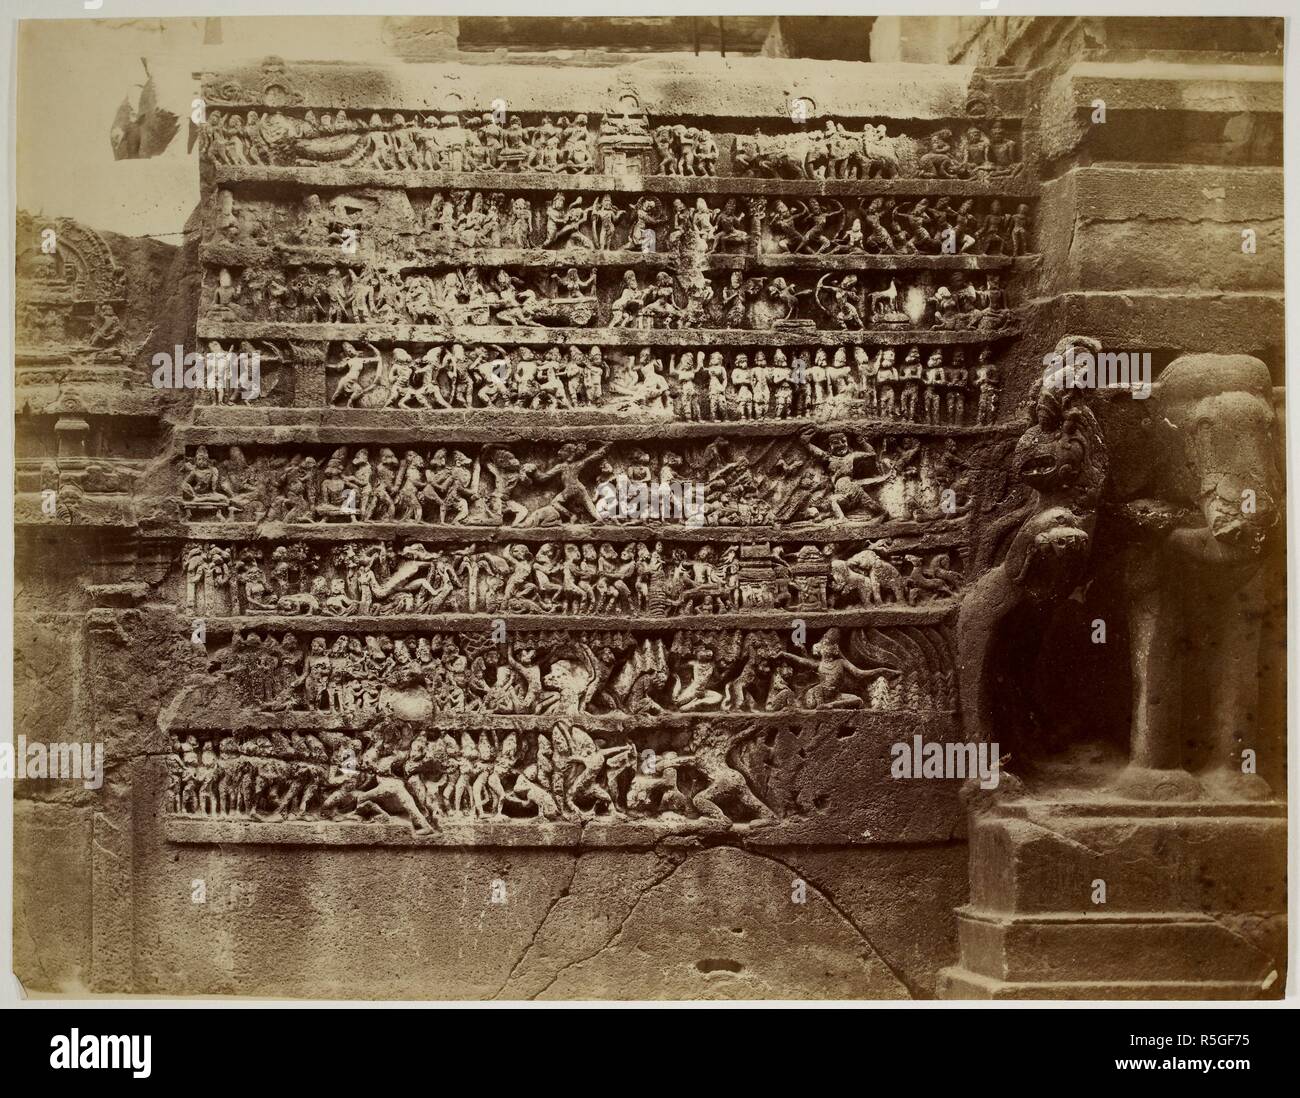 Frise de scène de bataille du Ramayana sur le mur sud-ouest de la grotte hindoue, Mahamandapa (XVI) Kailasanatha, Amritsar. Années 1870. Photographie. Source : Photo 40/(59). Auteur : Cousens, Henry. Banque D'Images